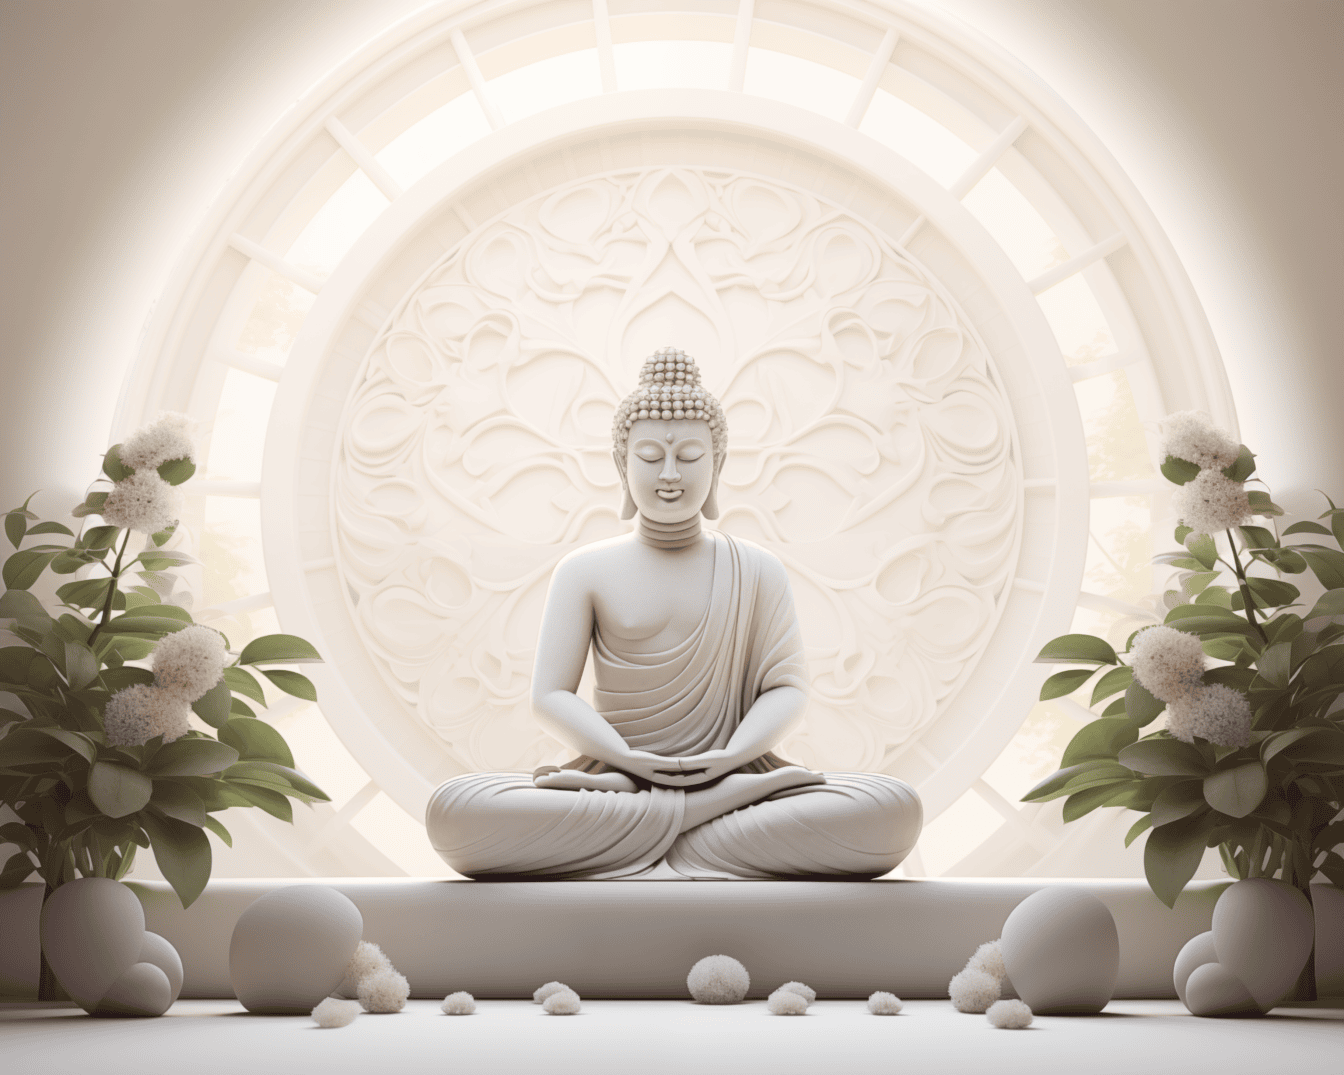 Magnifik vit staty av en Buddha som sitter i en lotusställning och mediterar bredvid vita blommor